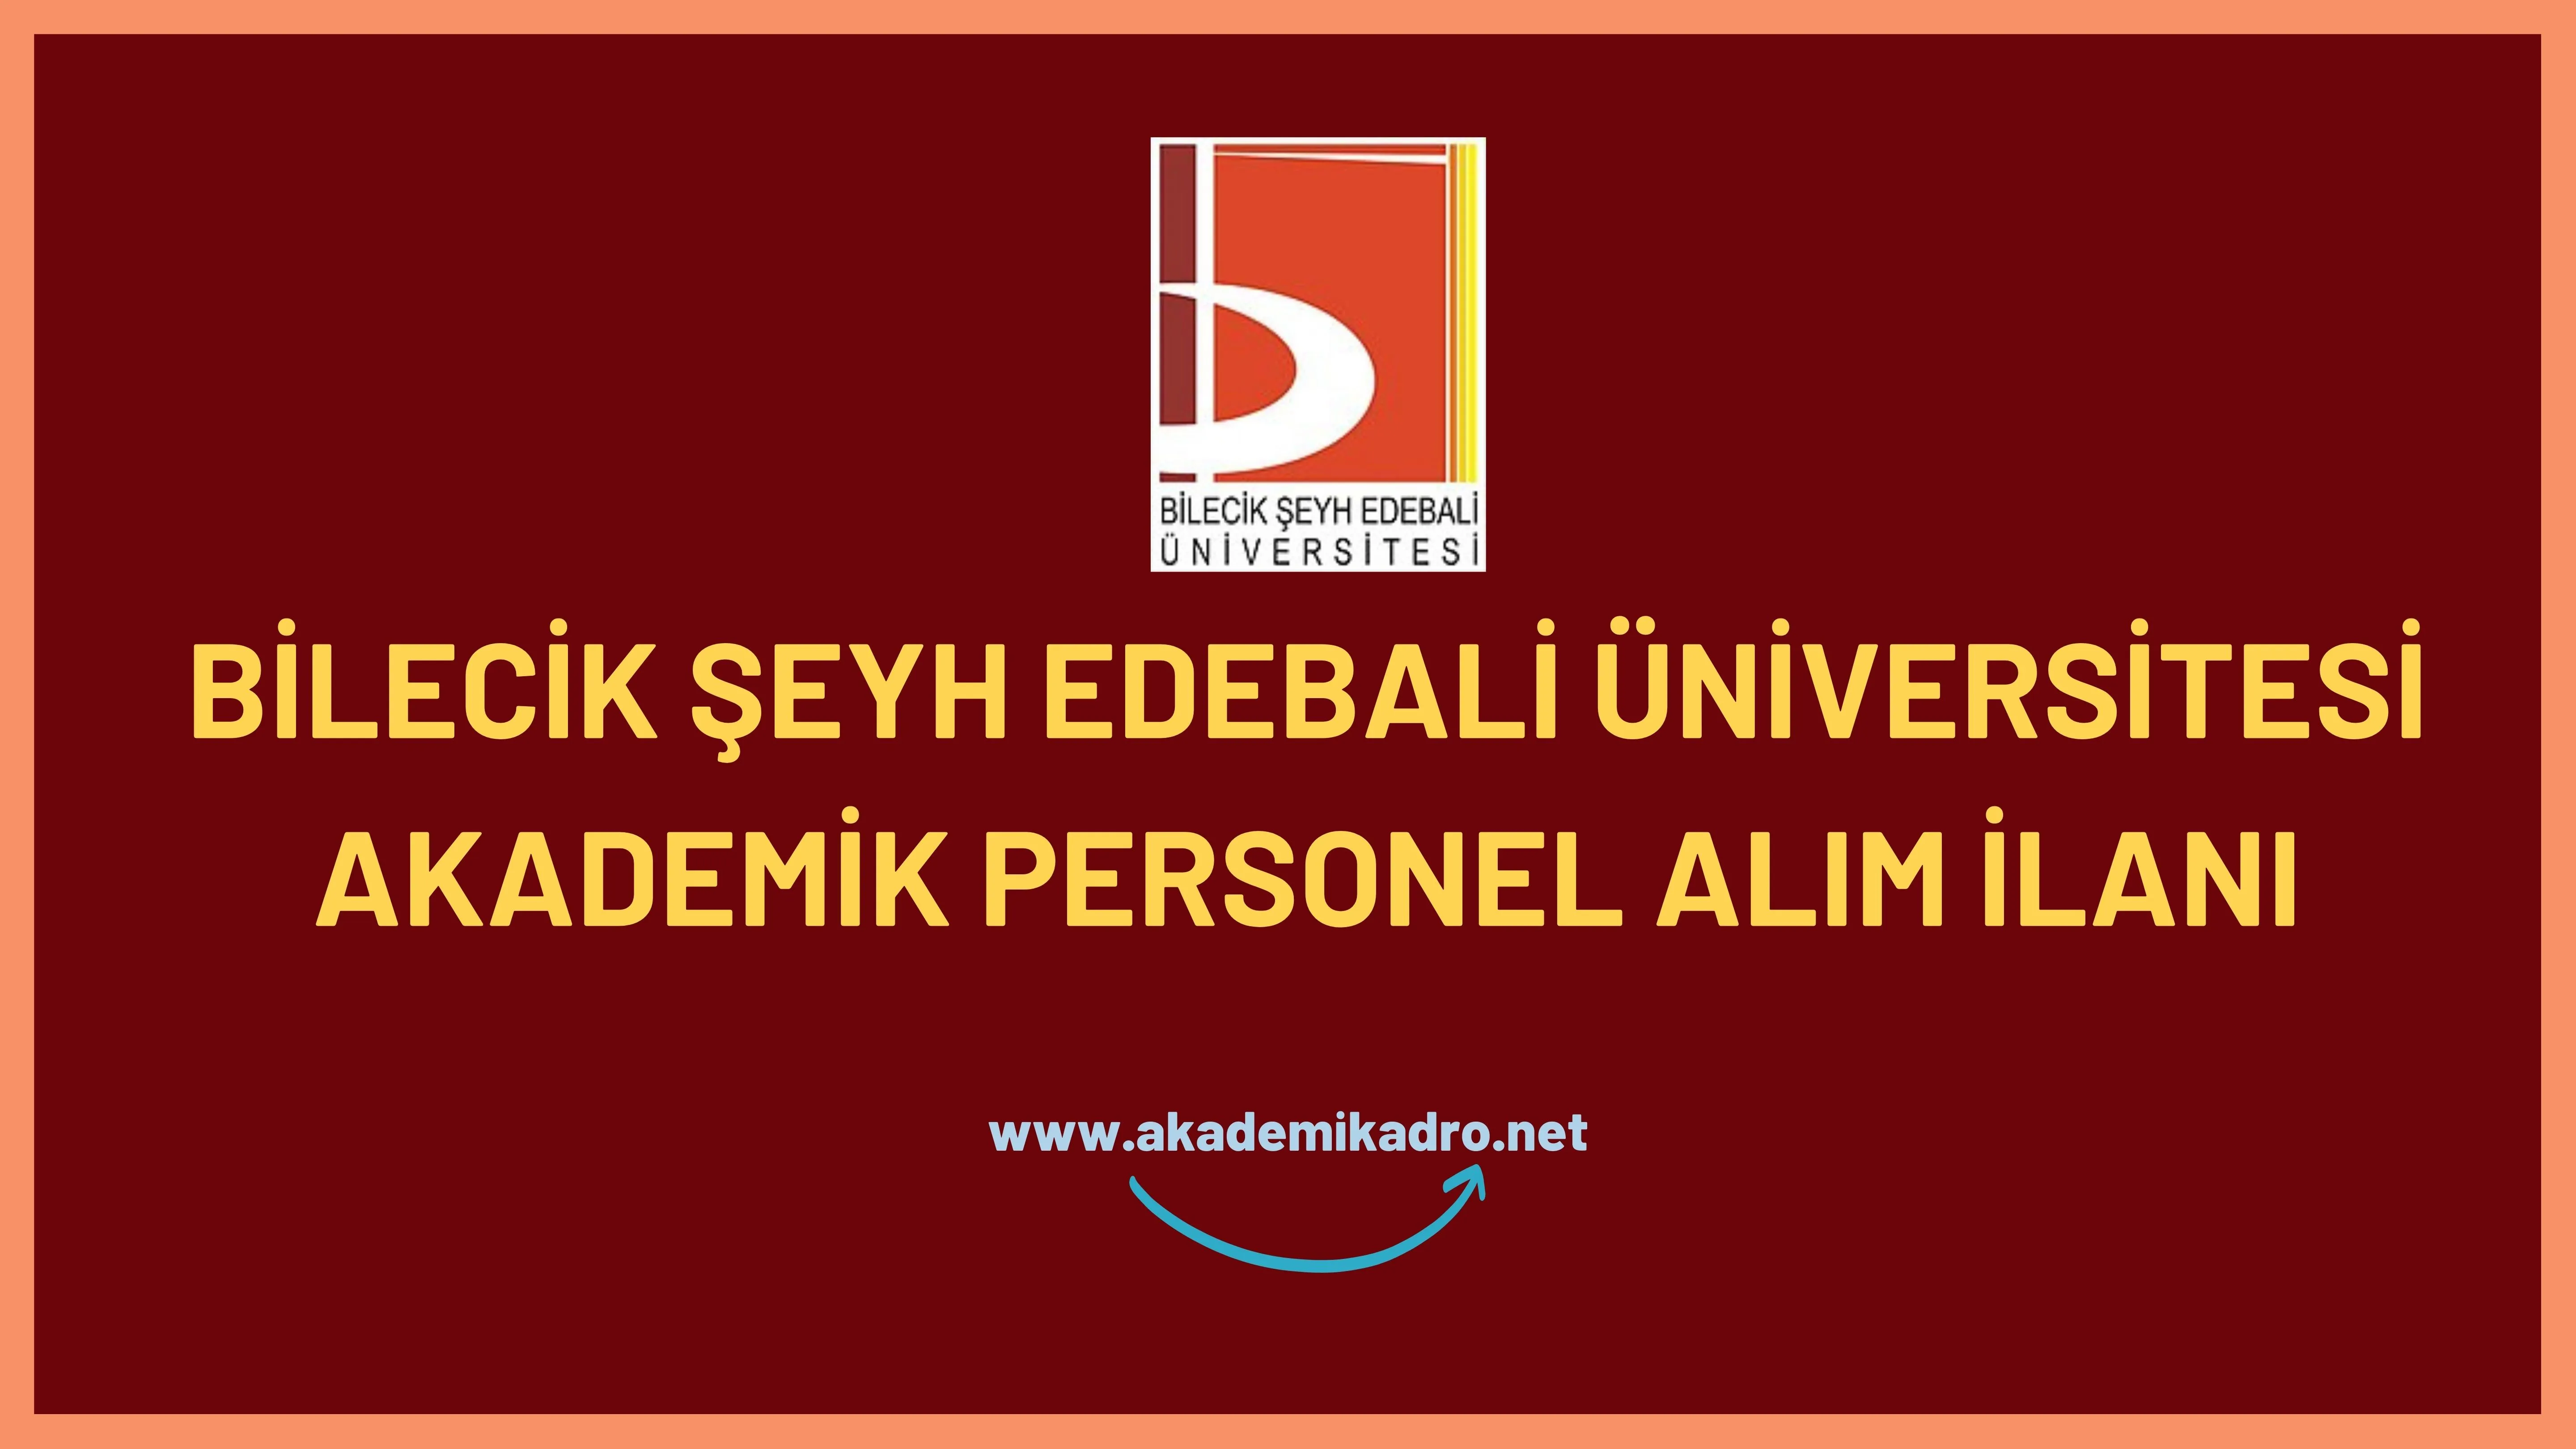 Bilecik Şeyh Edebali Üniversitesi birçok alandan 27 akademik personel alacak.